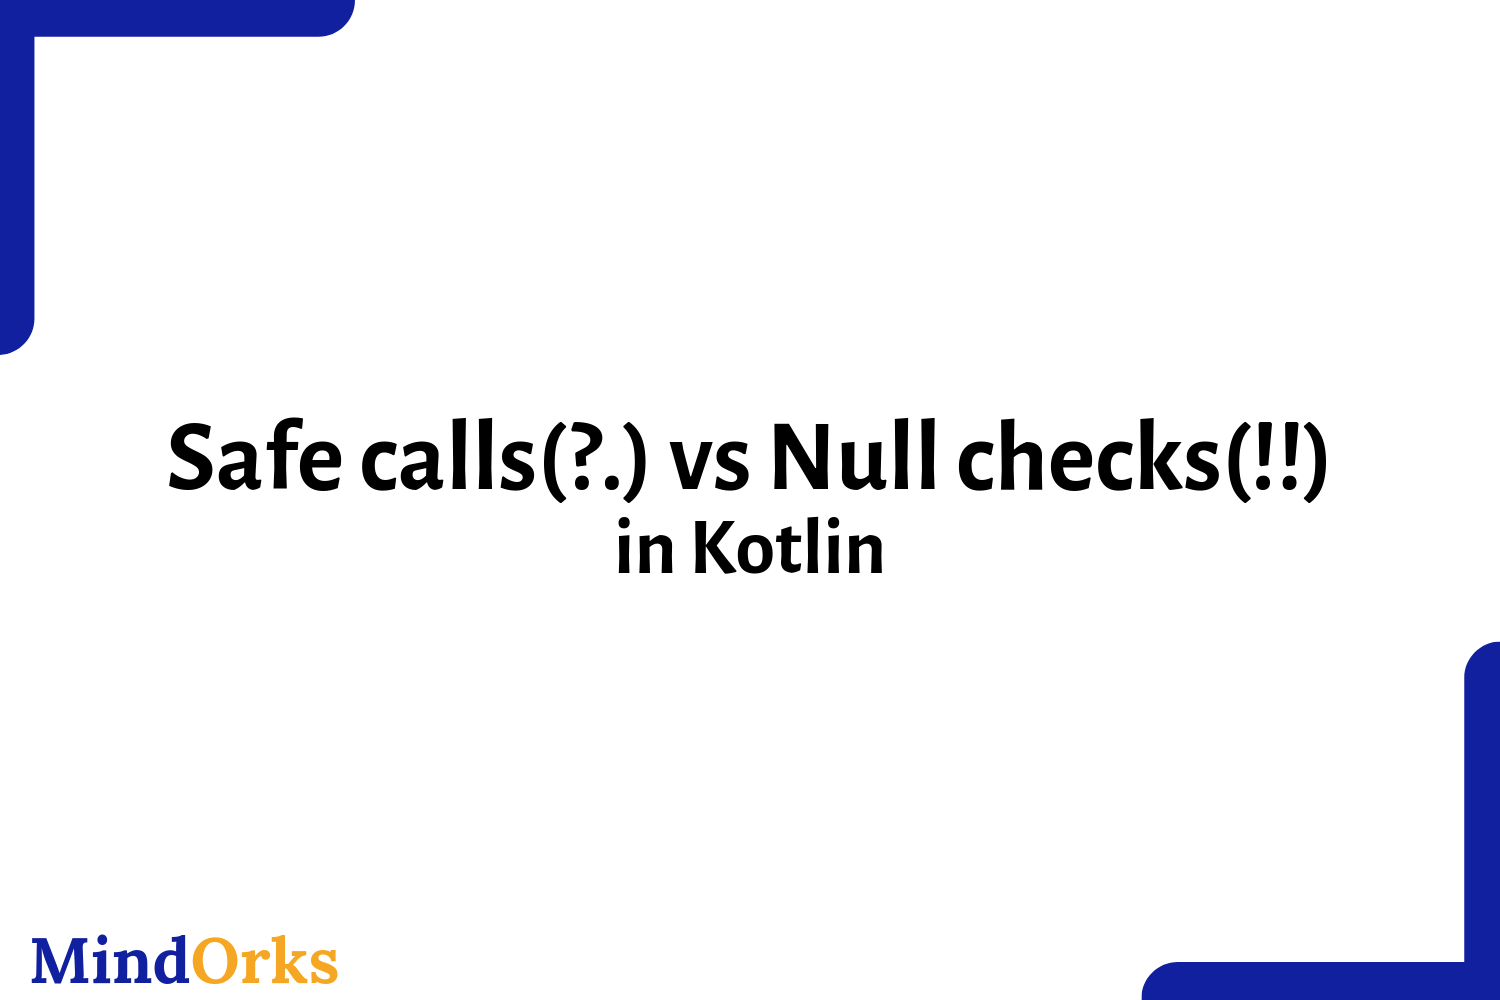 Safe calls(?.) vs Null checks(!!) in Kotlin